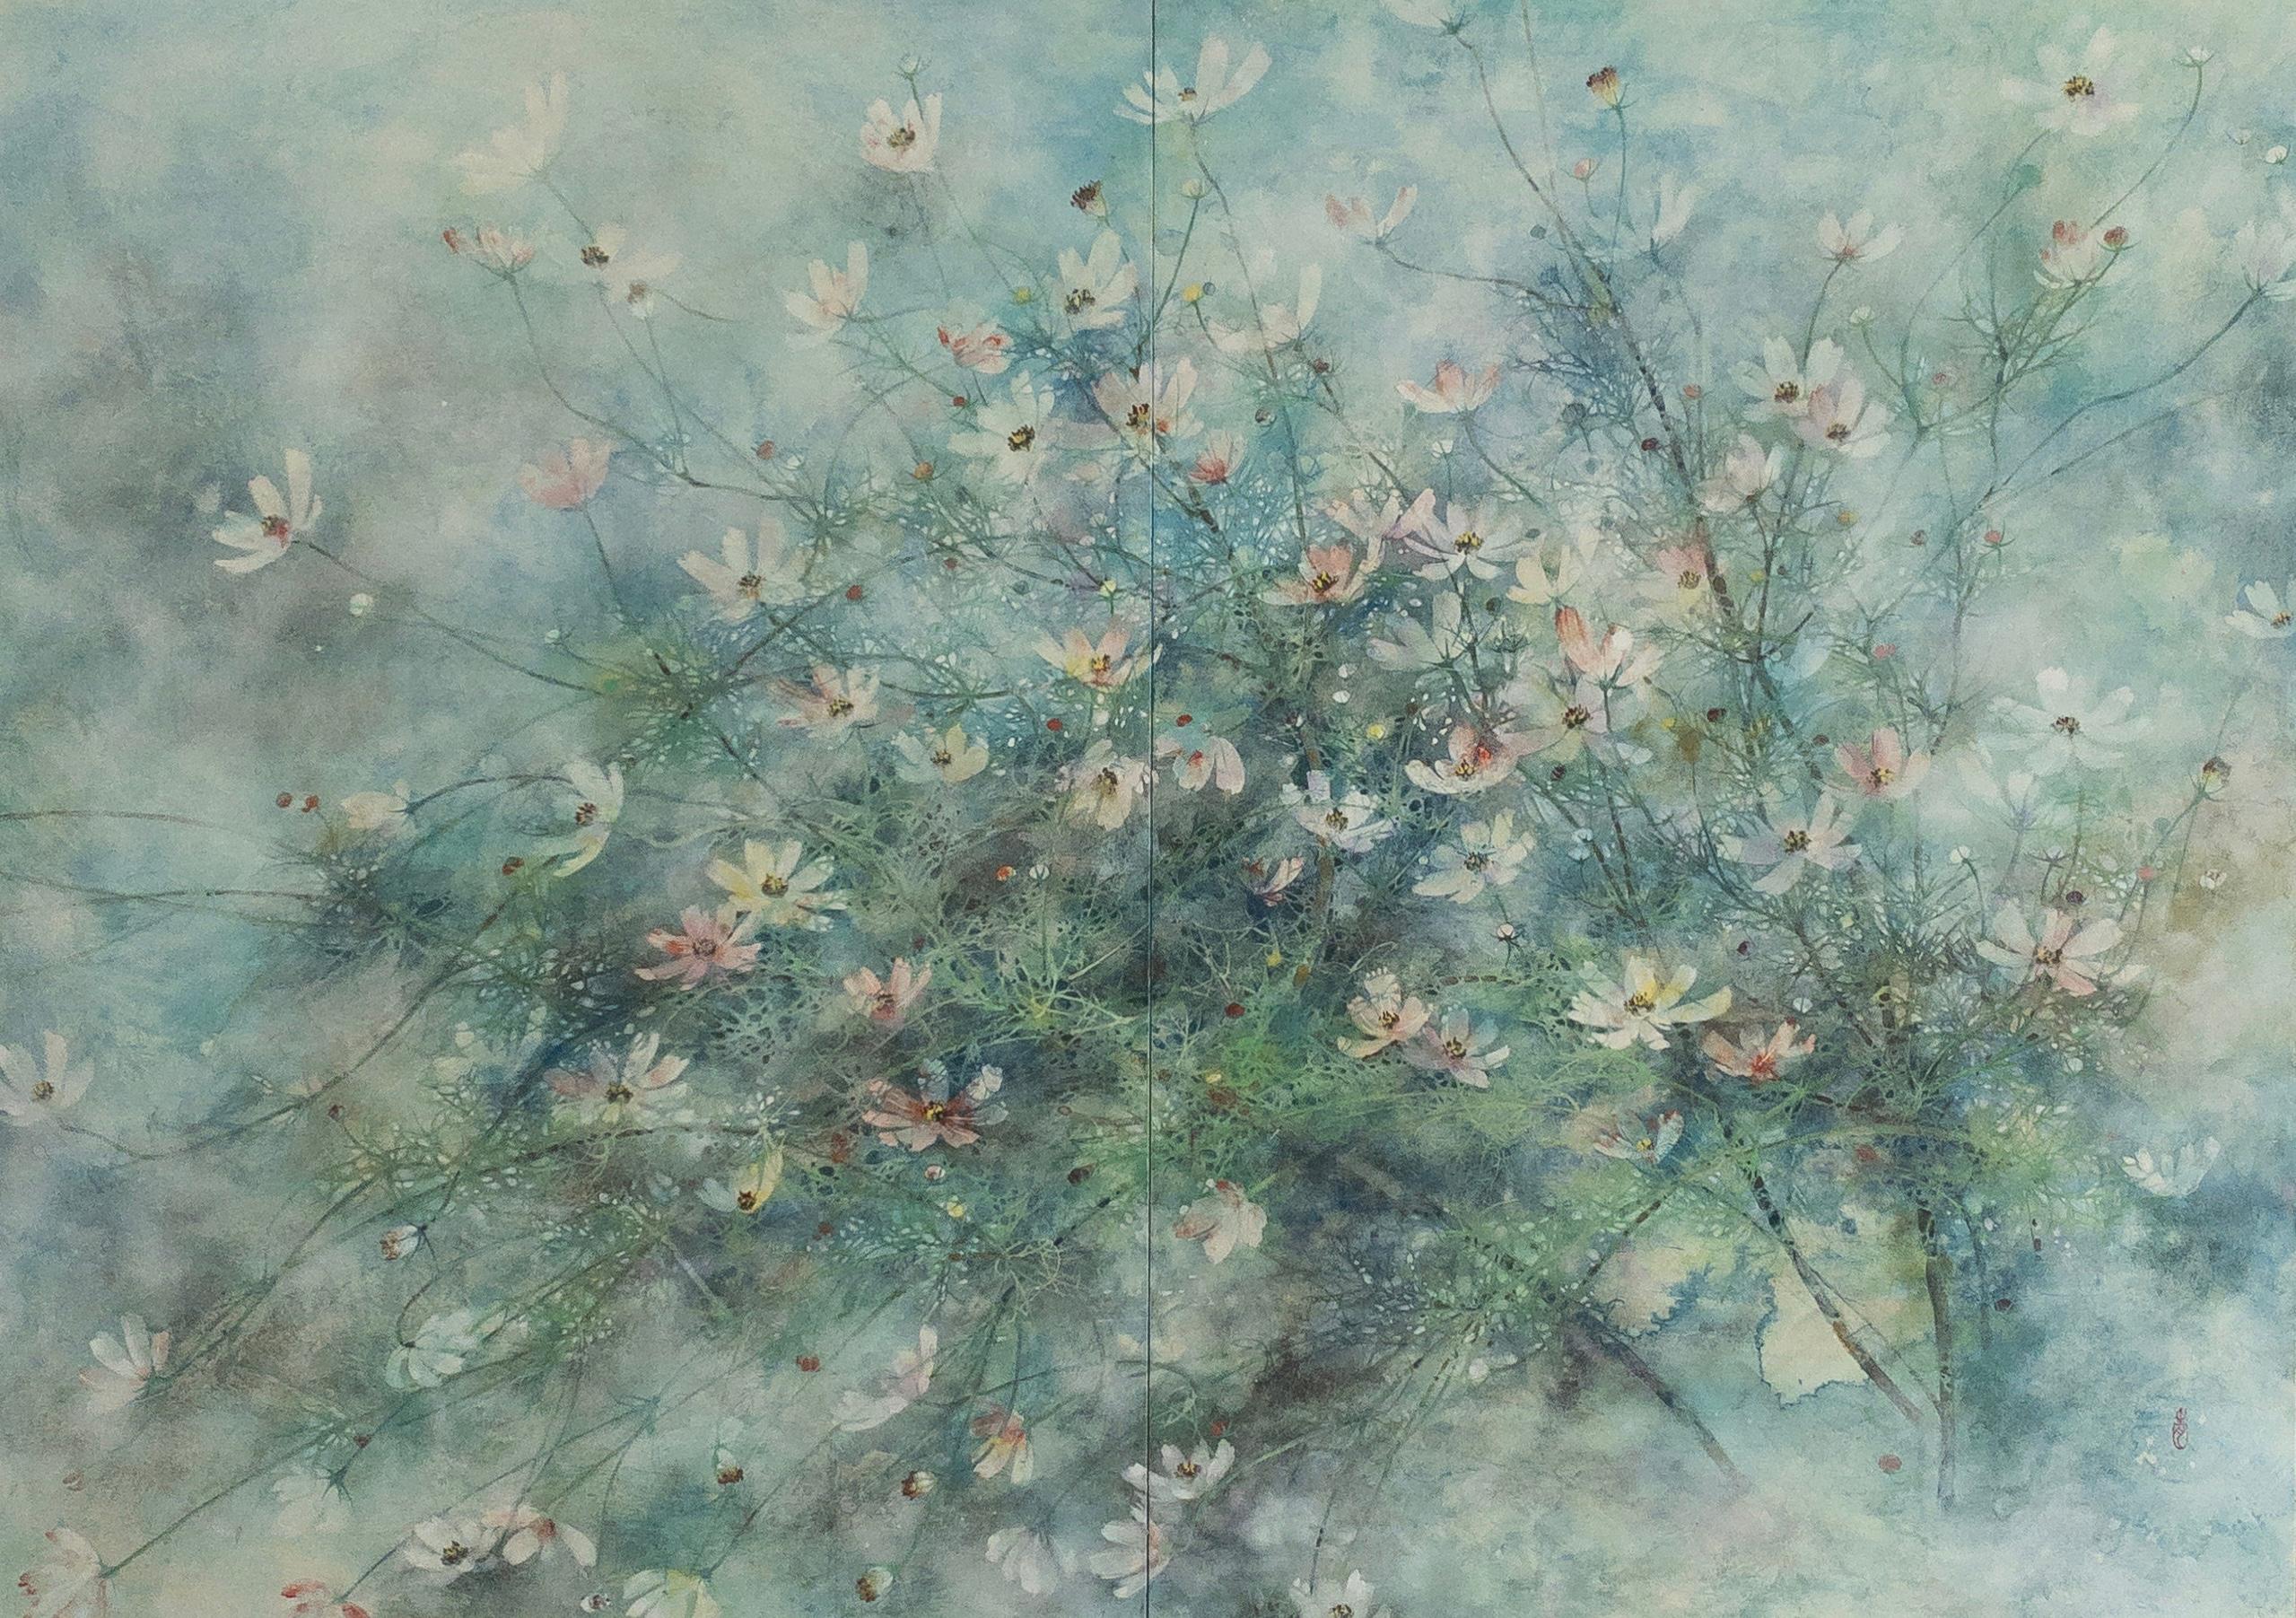 Yiching Chen Landscape Painting – Hope von CHEN Yiching - Zeitgenössische Nihonga-Malerei, Kosmosblüten, blau